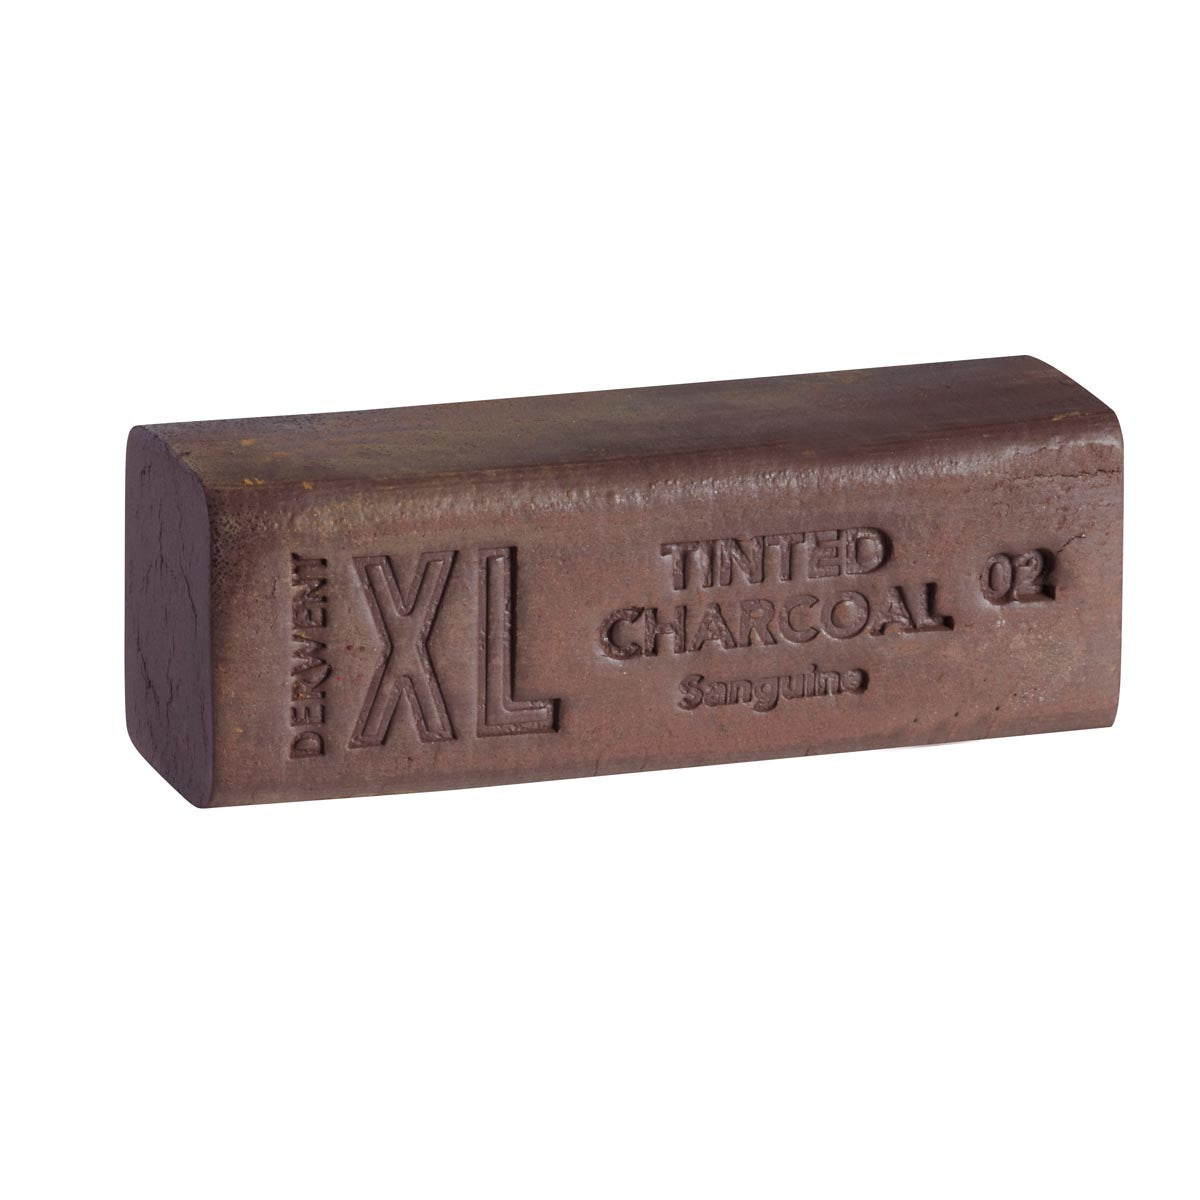 Derwent - Tinted Charcoal XL Block - Sanguine